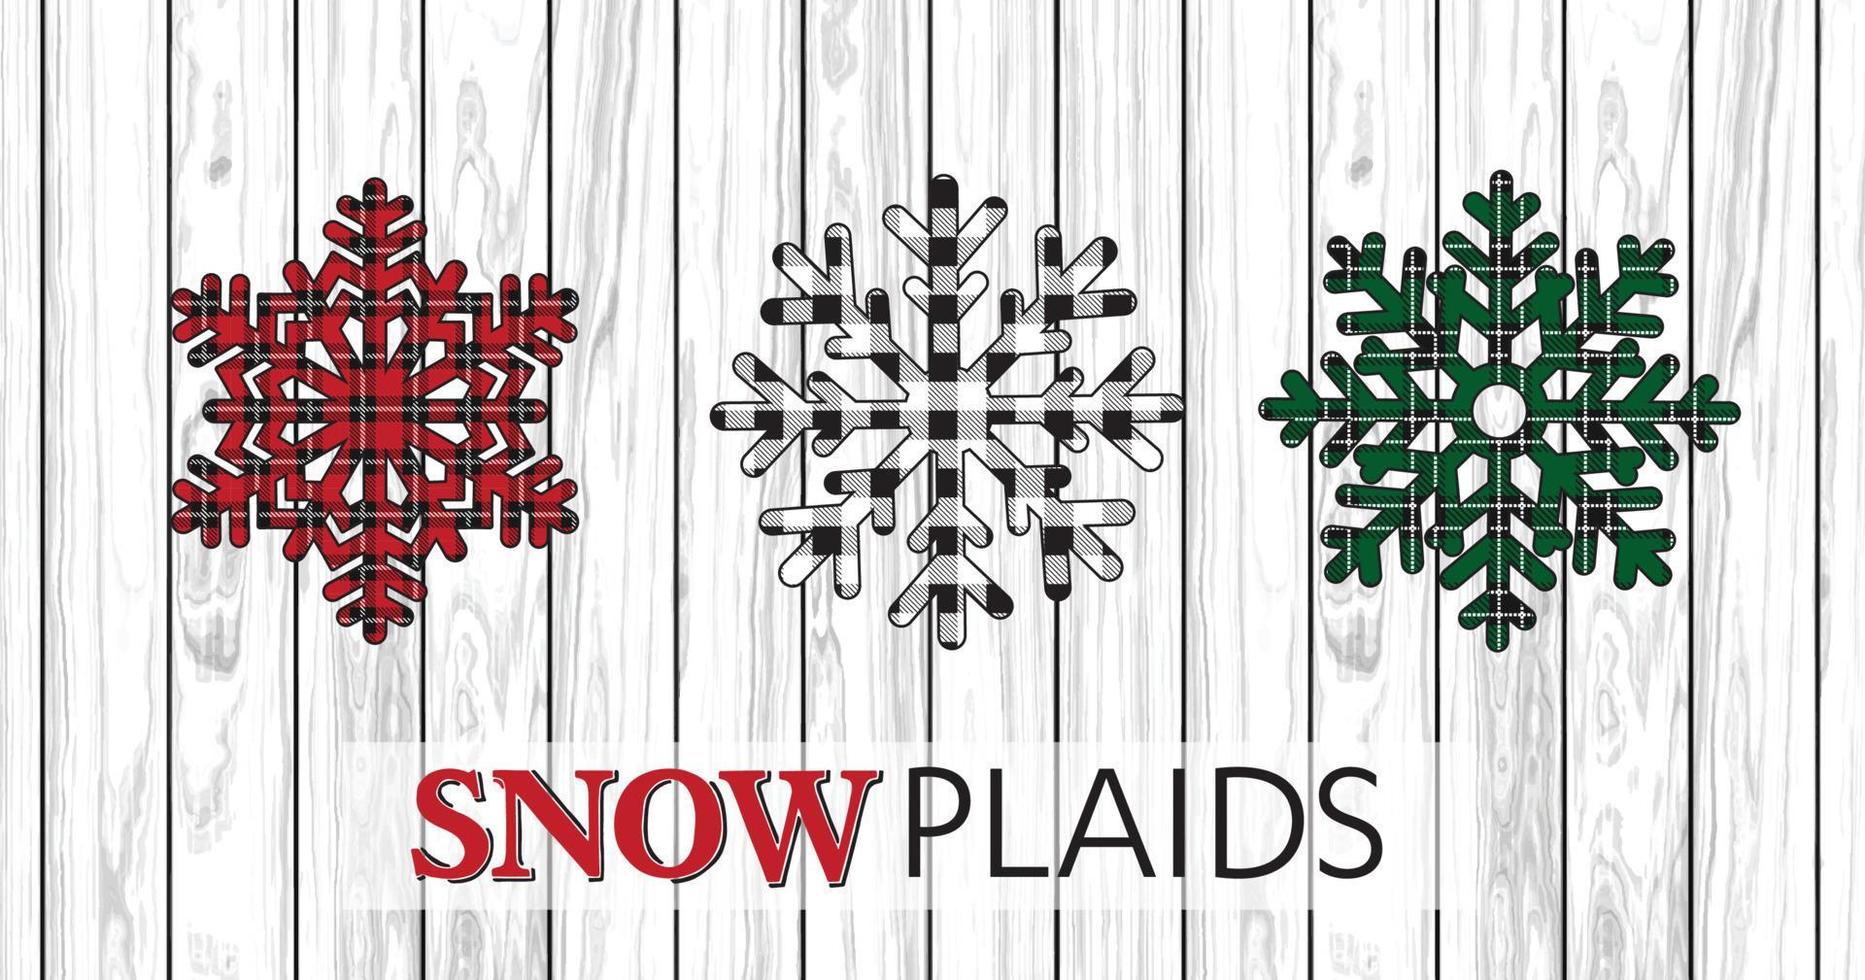 flocons de neige de Noël avec différents plaids design - snowplaids - conception de vecteur de Noël